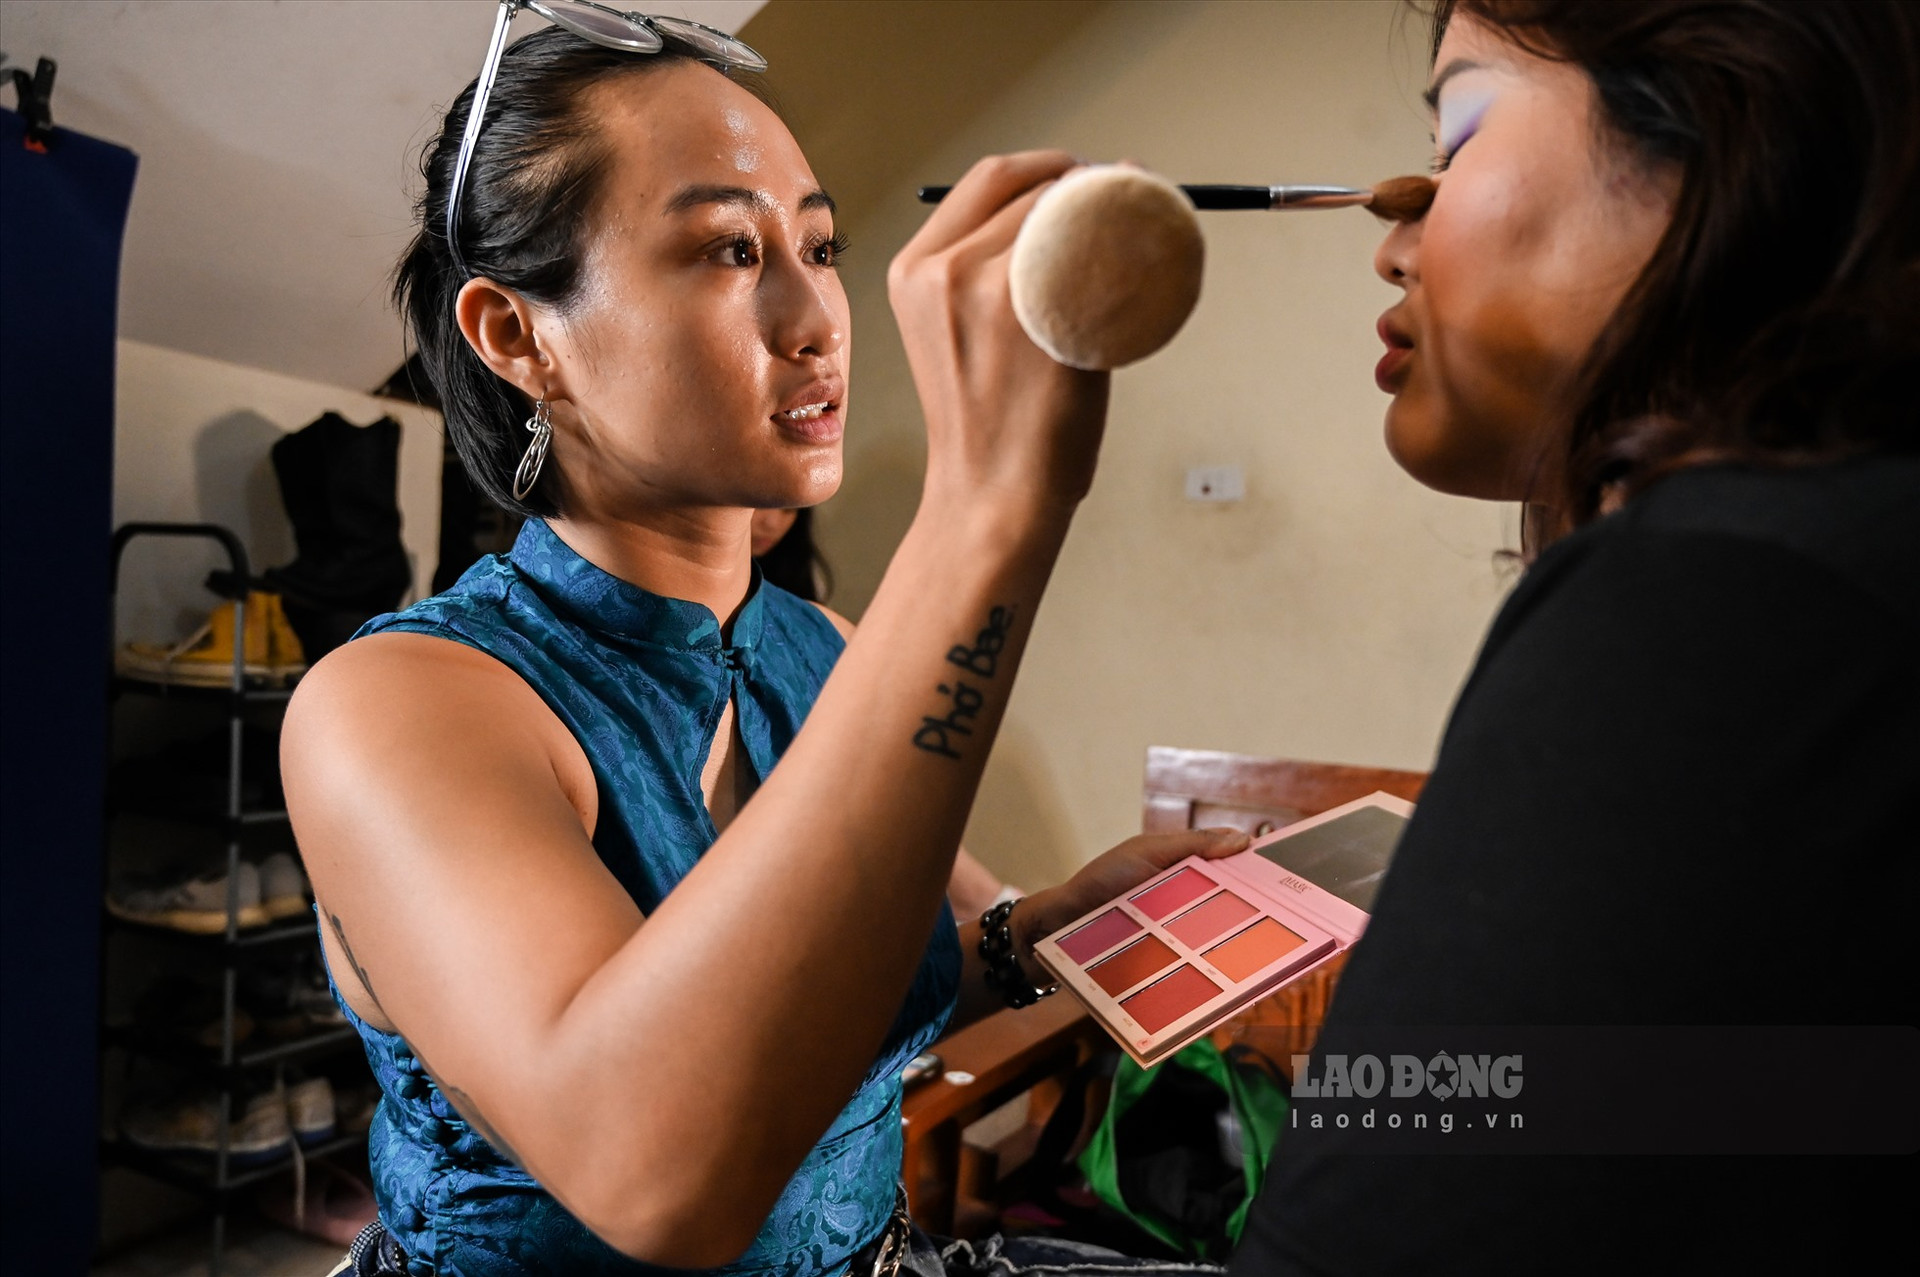 Càng cận ngày Halloween, chị Hoàng Linh (24 tuổi, Hà Nội) lại bận rộn với công việc hóa trang cho khách đi chơi dịp lễ. Chị Linh đã có 5 năm kinh nghiệm làm make-up artist (thợ trang điểm chuyên nghiệp) và hơn 2 năm theo đuổi bộ môn body painting (hội họa trên cơ thể).